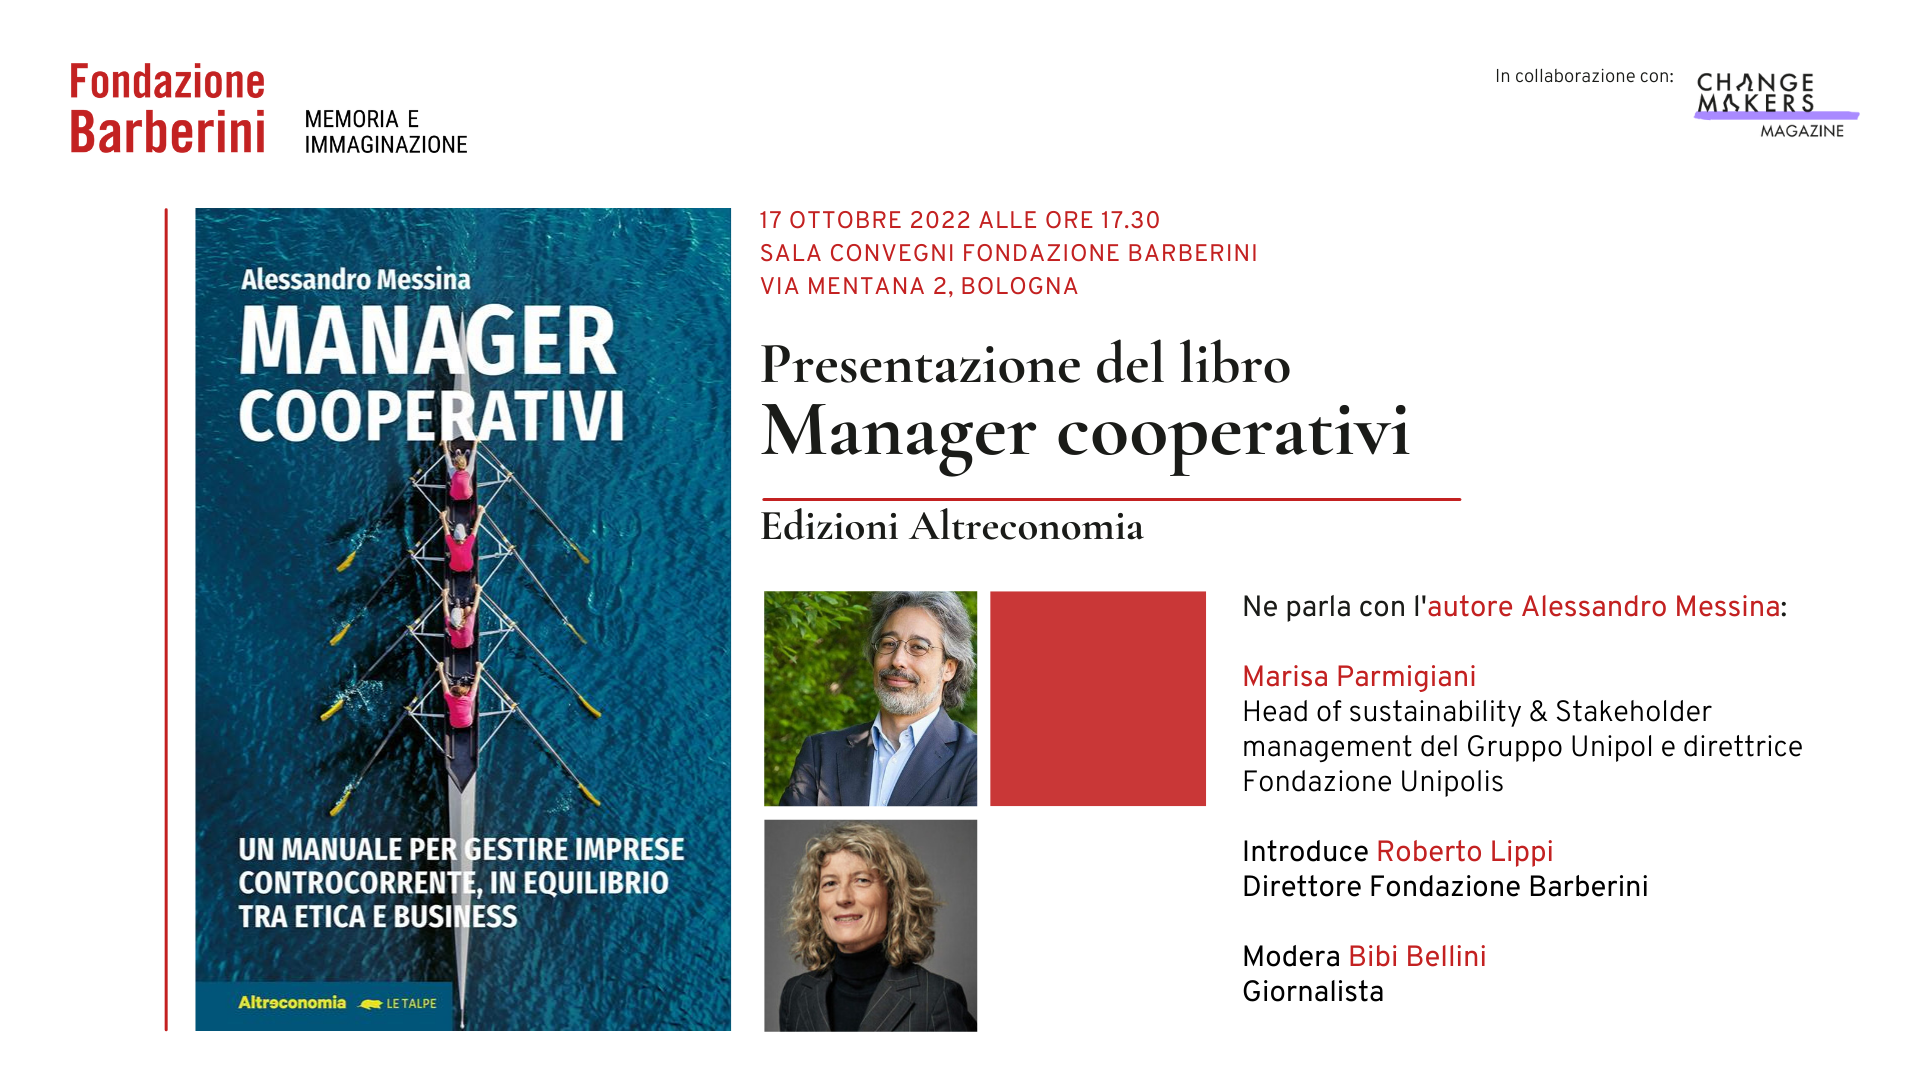 Presentazione del libro “Manager cooperativi” 17 ottobre 2022 alle ore 17.30